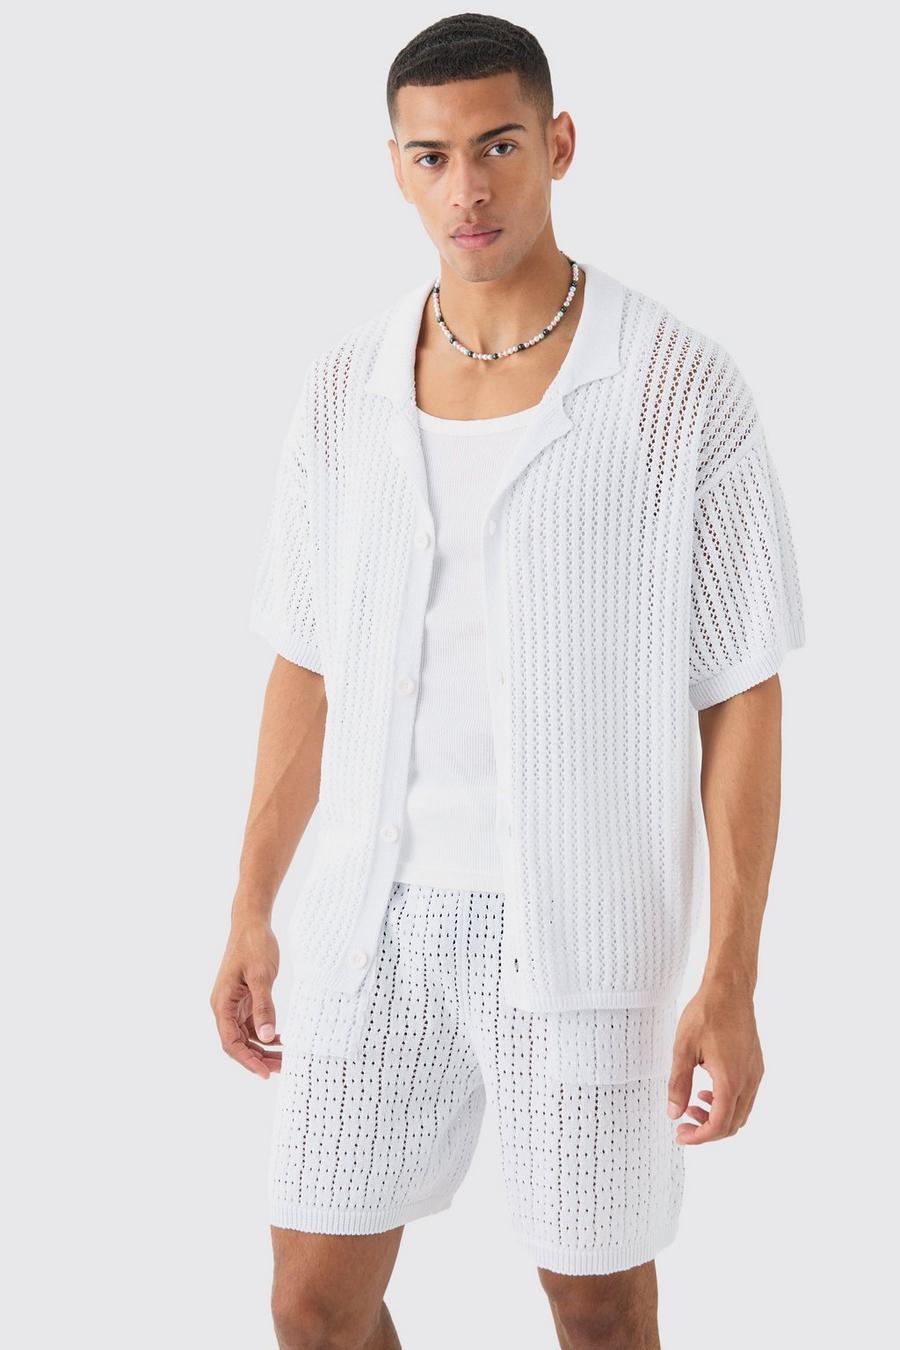 Boxy Crochet Open Knit Revere Shirt In White